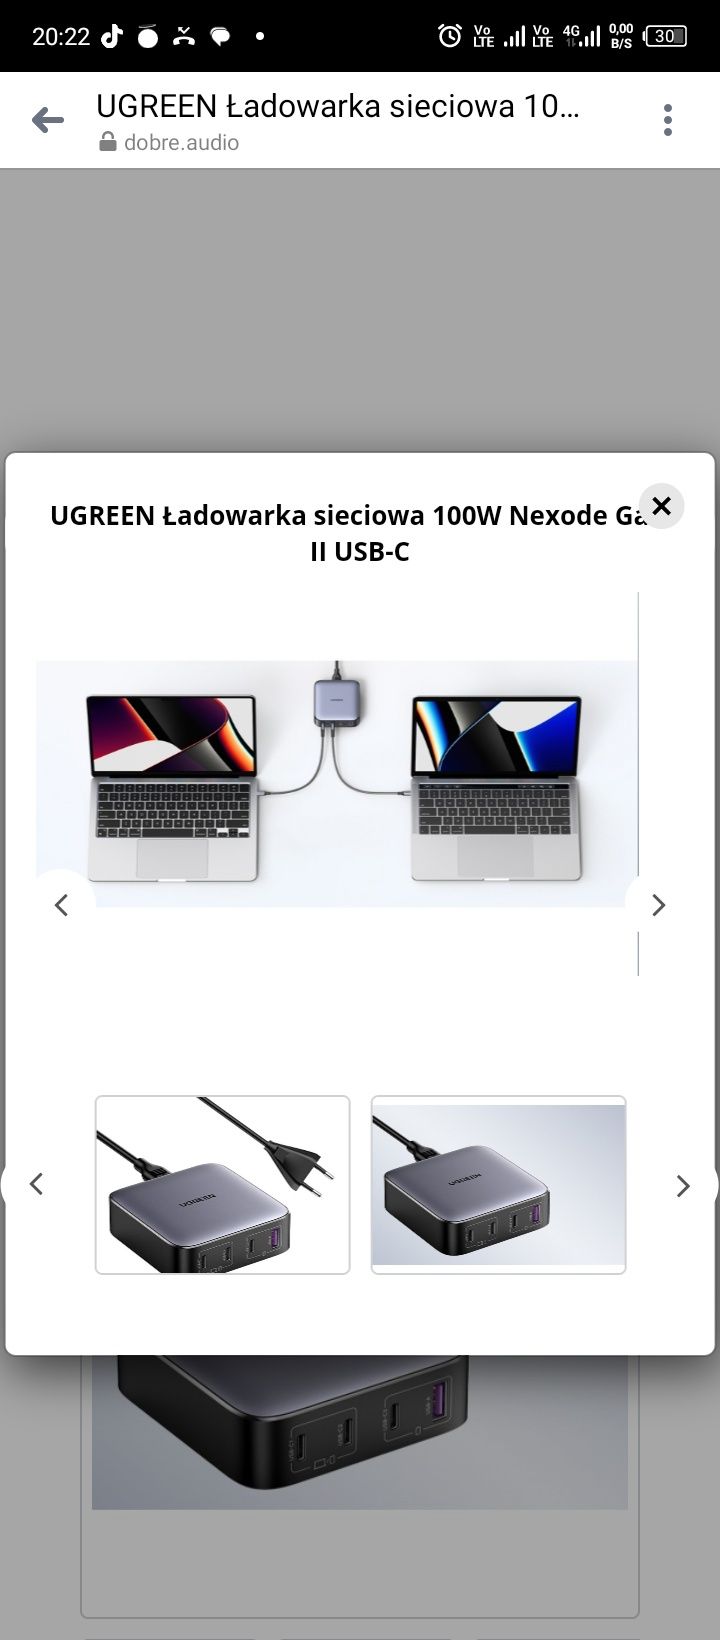 UGREEN Ładowarka sieciowa 100W Nexode GaN II USB-C